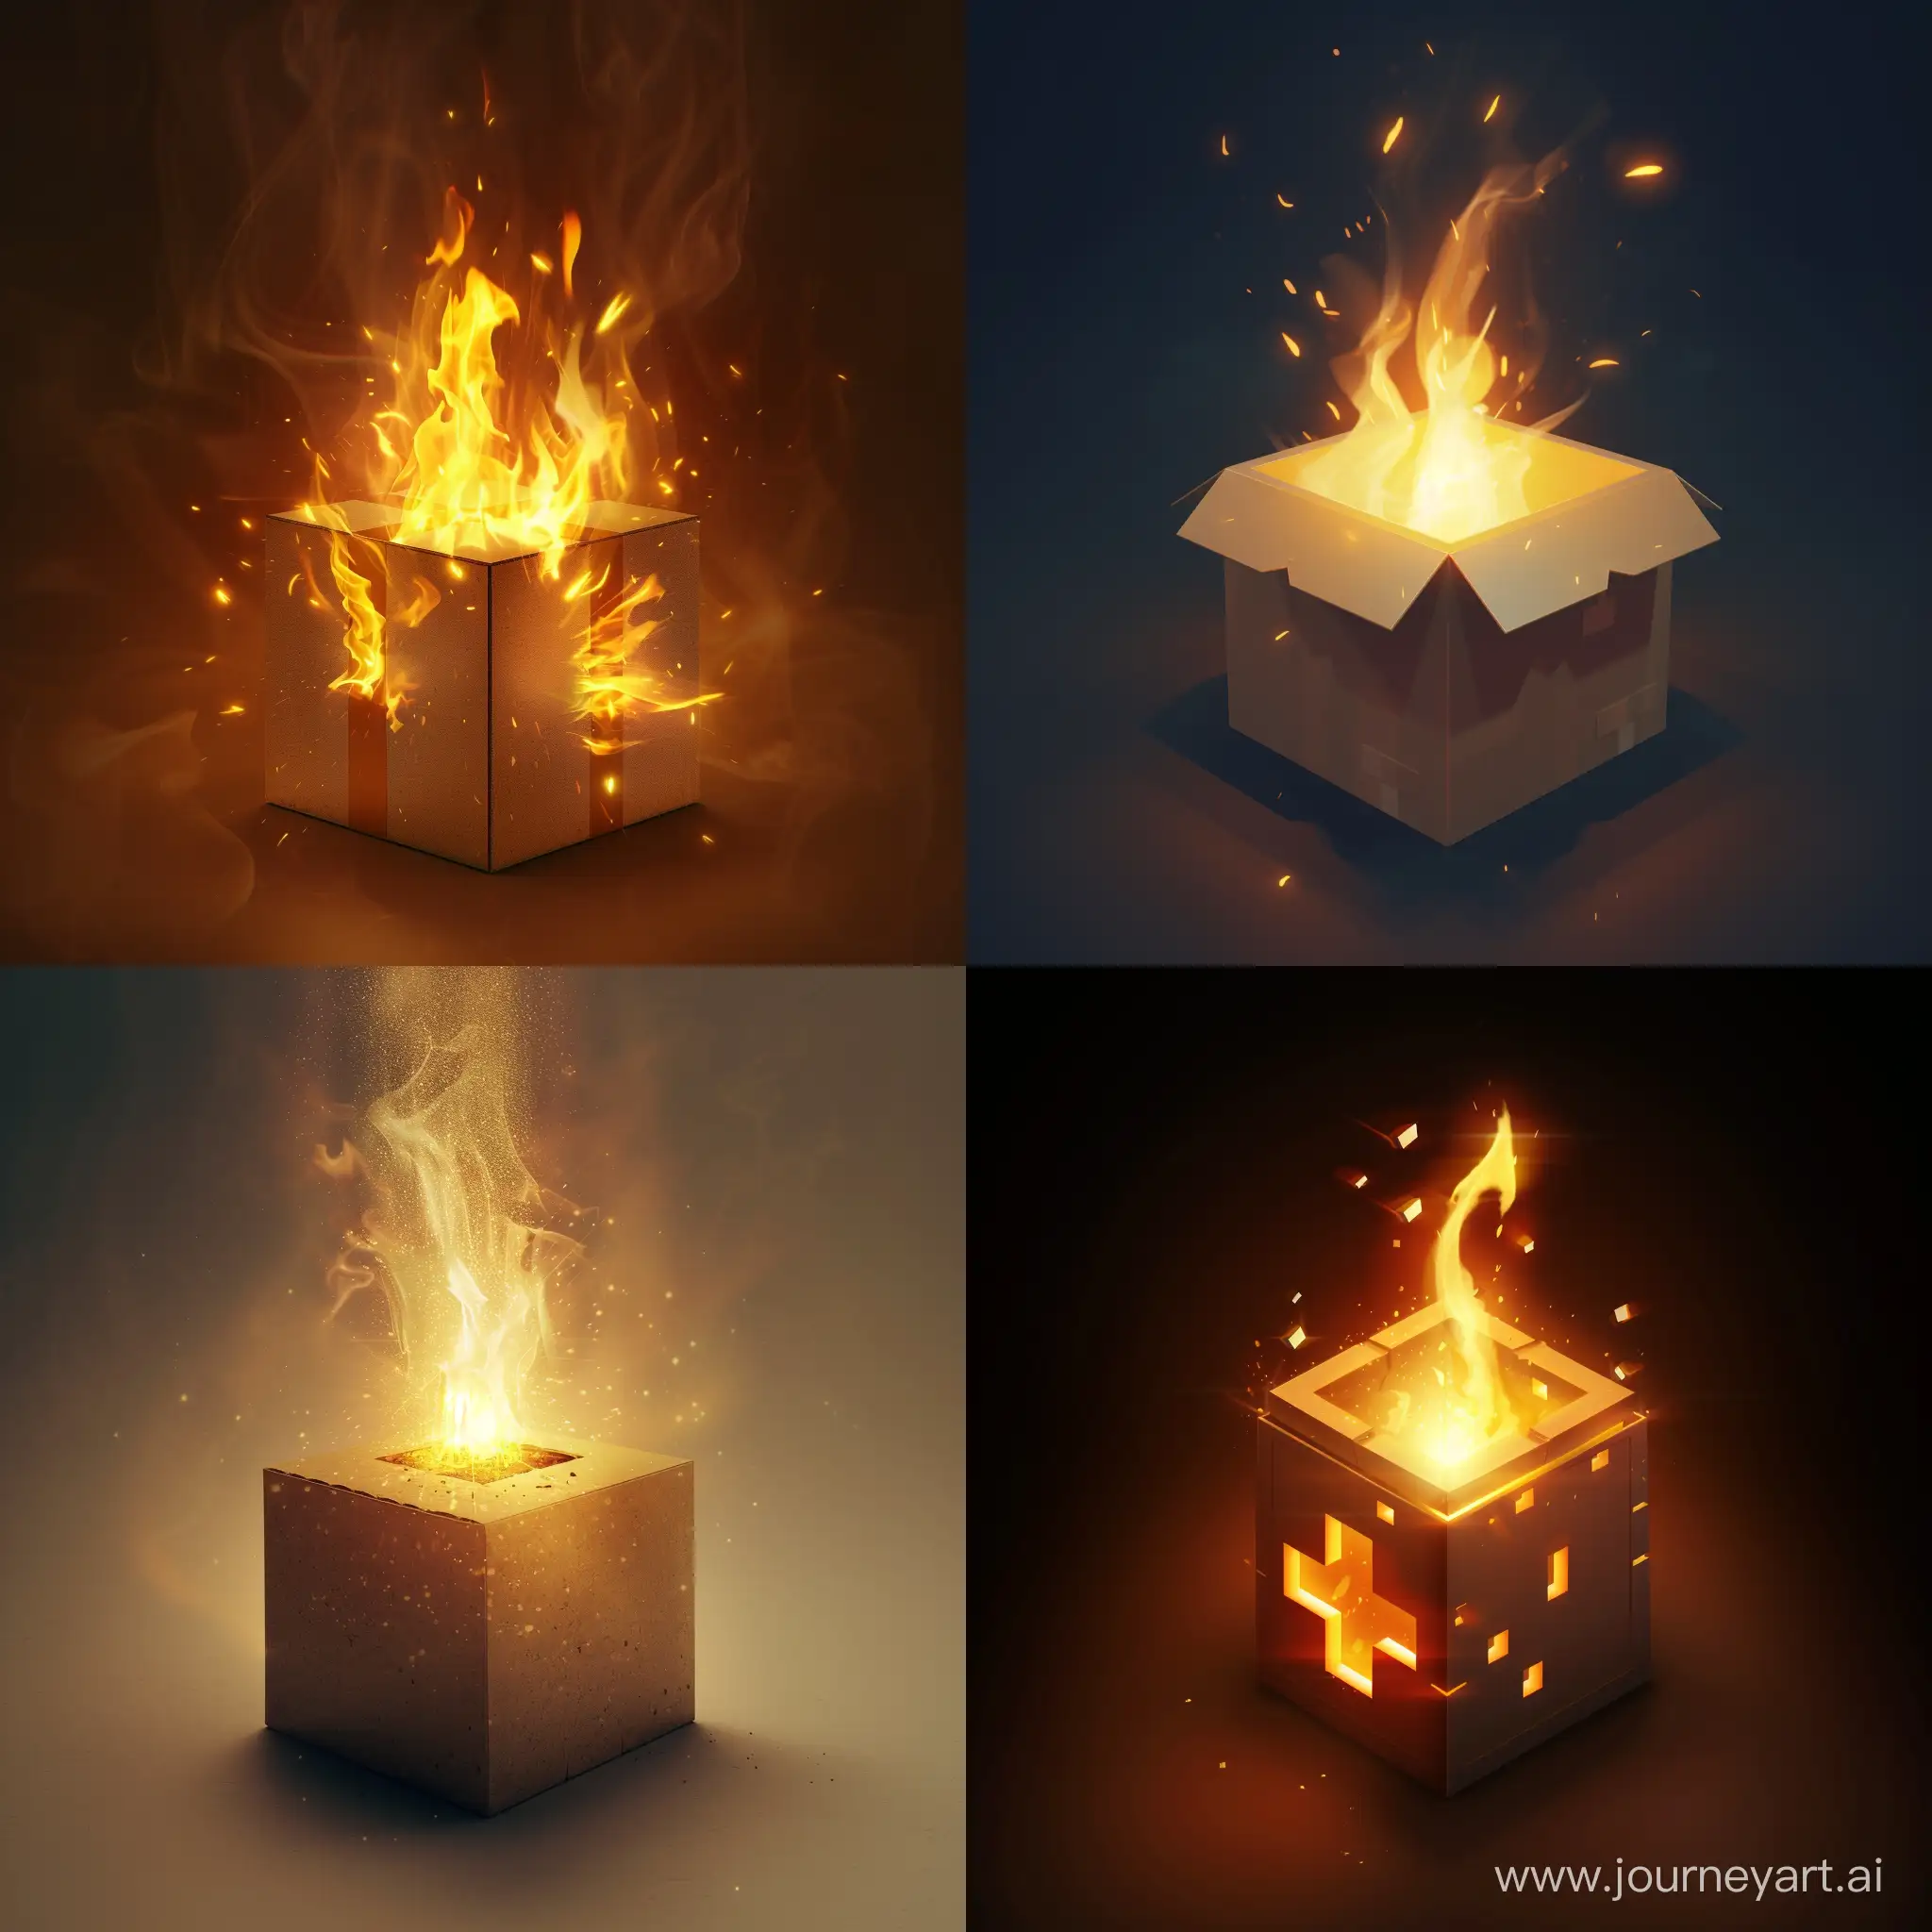 یک آیکون برام طراحی کن به صورت سه بعدی باشد و یک بسته مکعبی باشد از جنس کارتن که در آن باز شده نور بیرون تابیده و یک آتش از ان بیرون آمده 